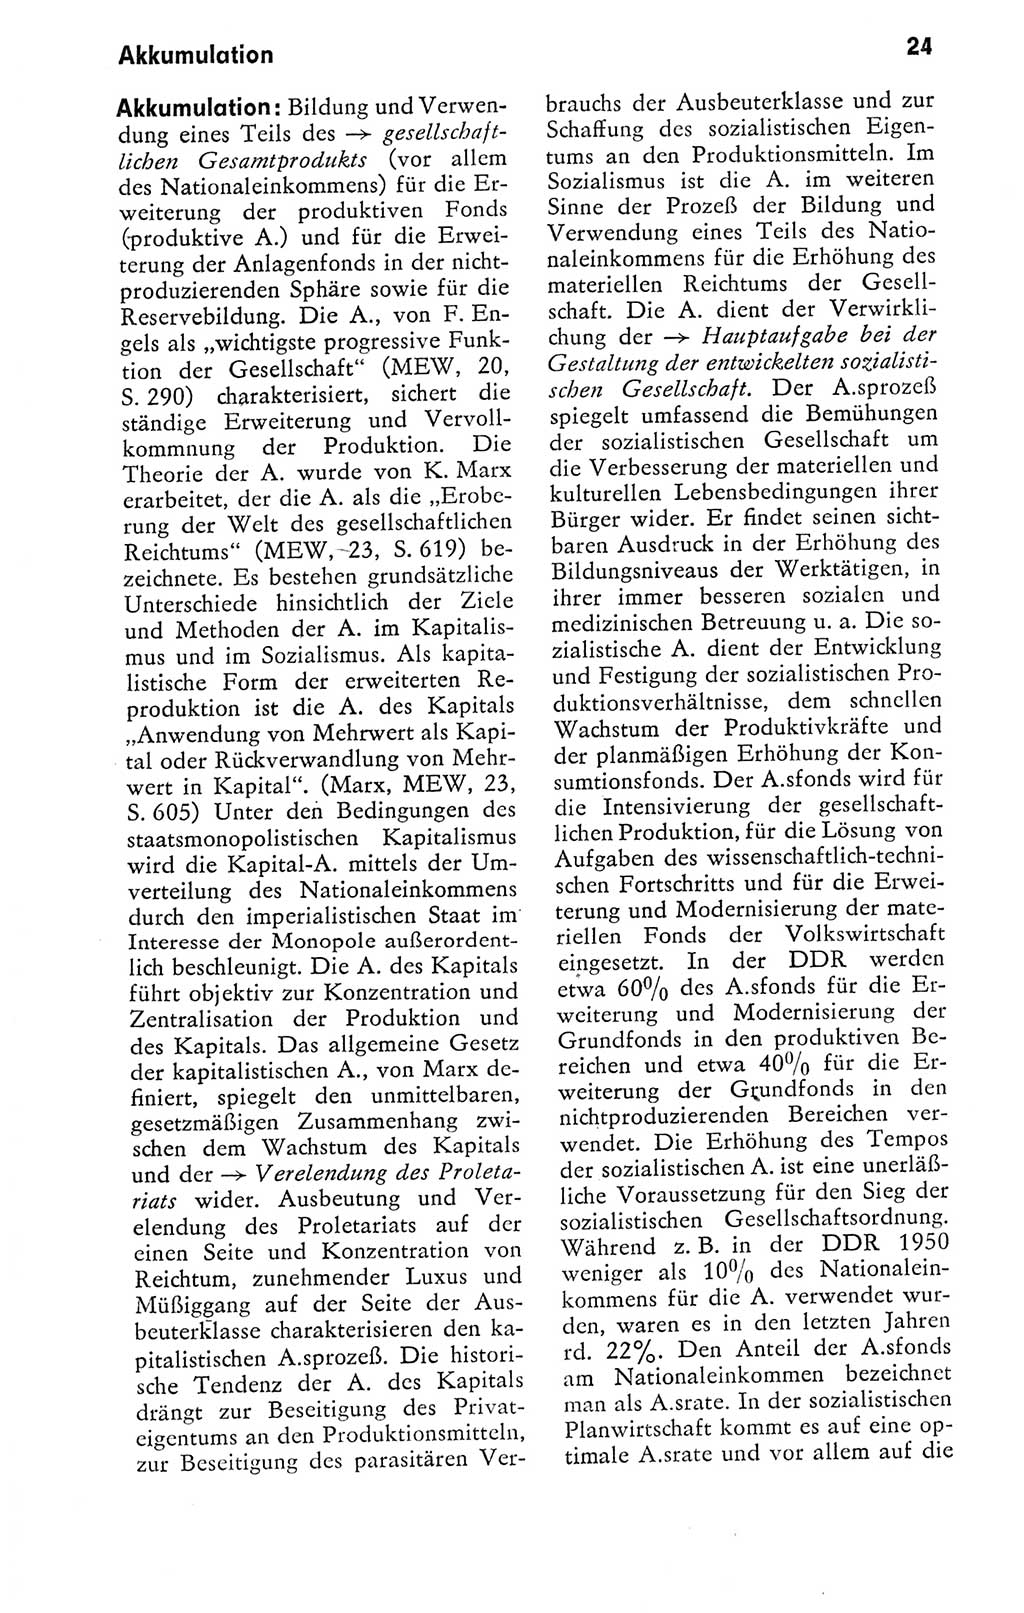 Kleines politisches Wörterbuch [Deutsche Demokratische Republik (DDR)] 1978, Seite 24 (Kl. pol. Wb. DDR 1978, S. 24)